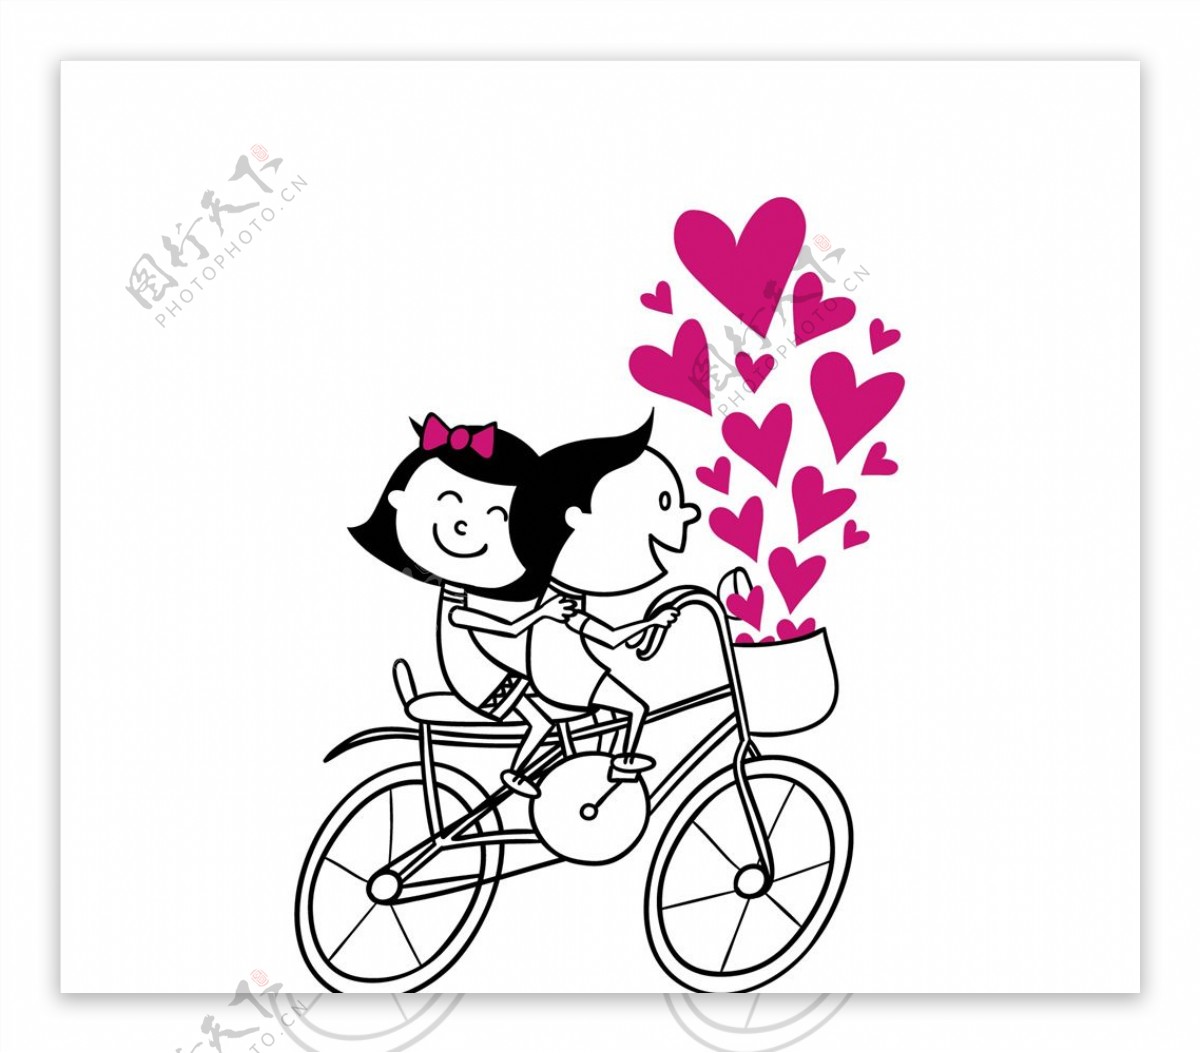 浪漫情侣骑自行车